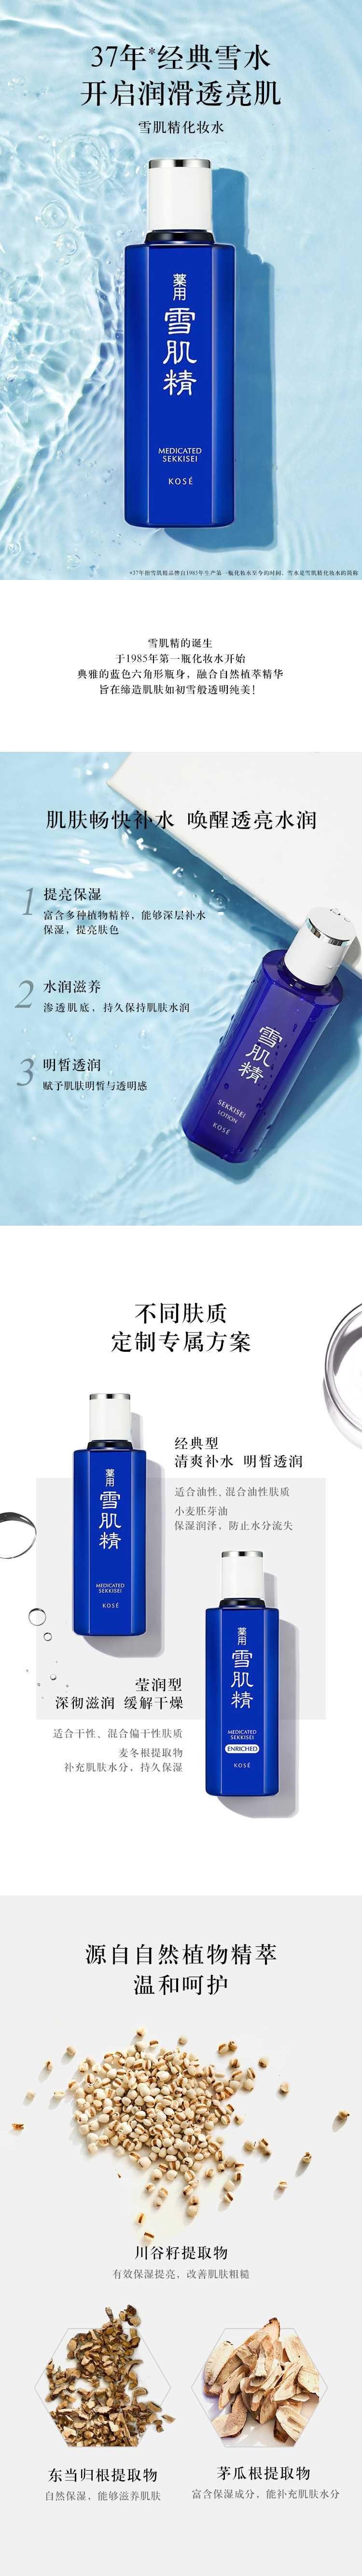 【日本直效郵件】SEKKISEI雪肌精 藥用提亮補水保濕美化妝水200ml 清爽型